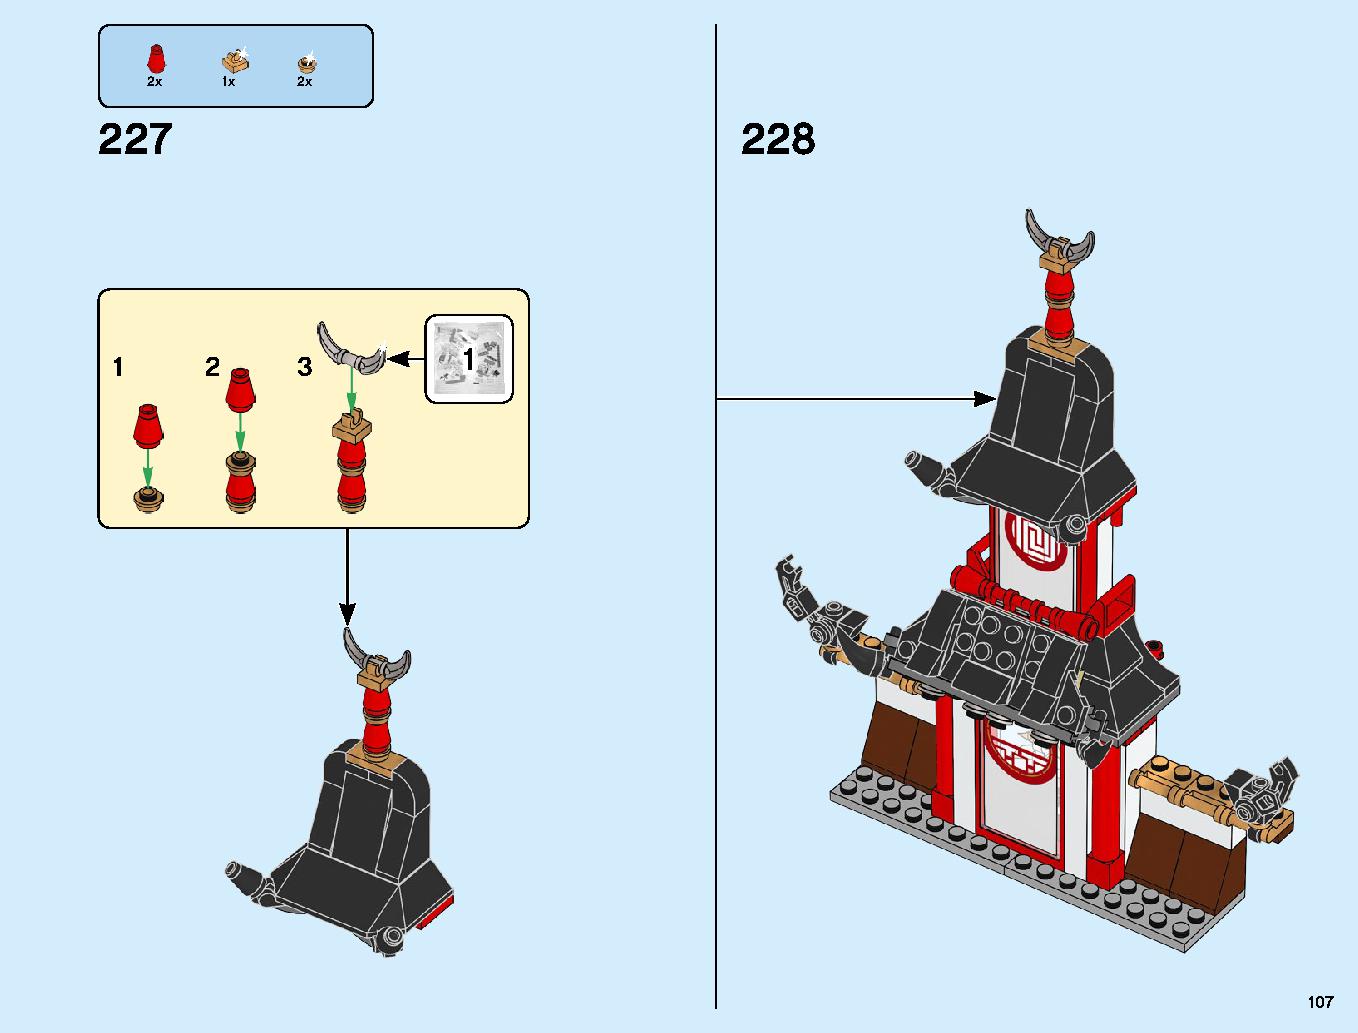 ニンジャ道場 70670 レゴの商品情報 レゴの説明書・組立方法 107 page